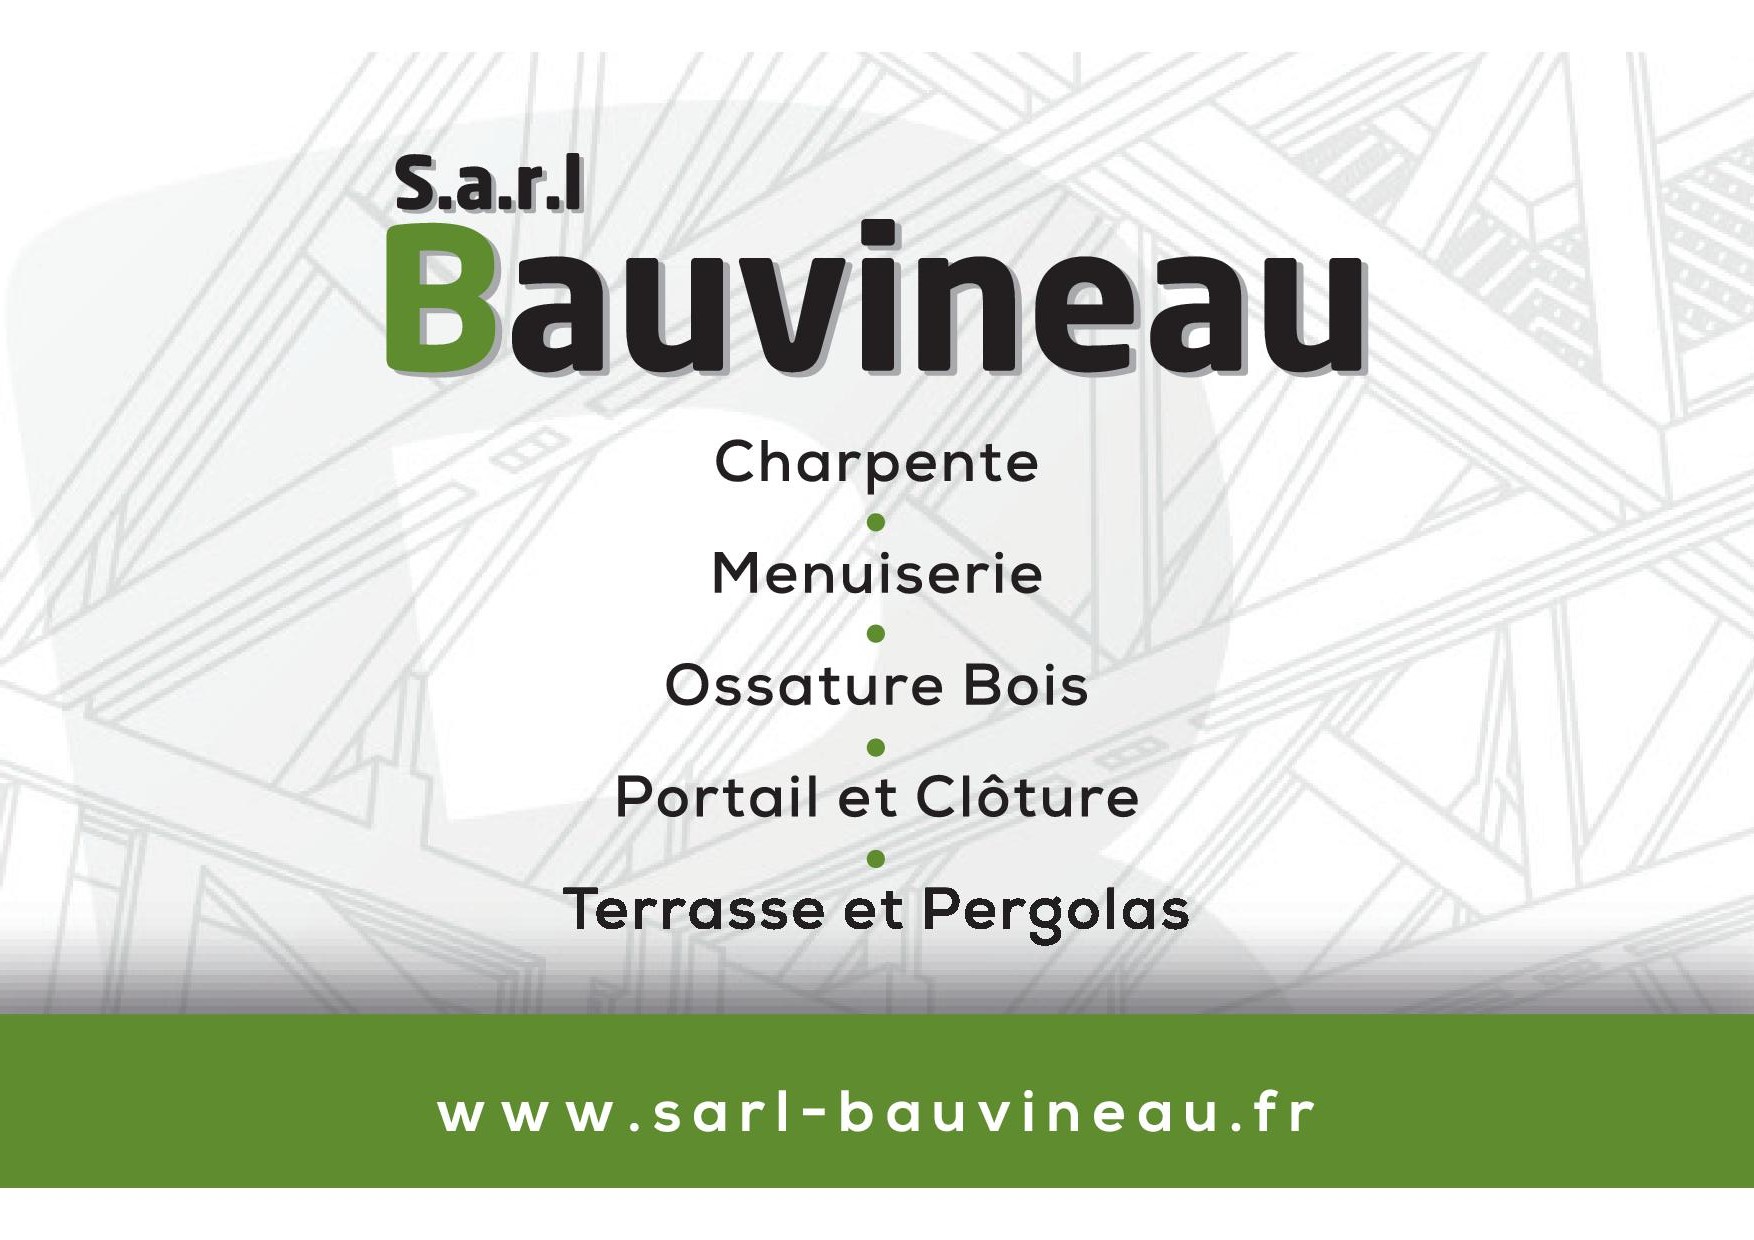 SARL BAUVINEAU - CDV 85 X 55-1.jpg